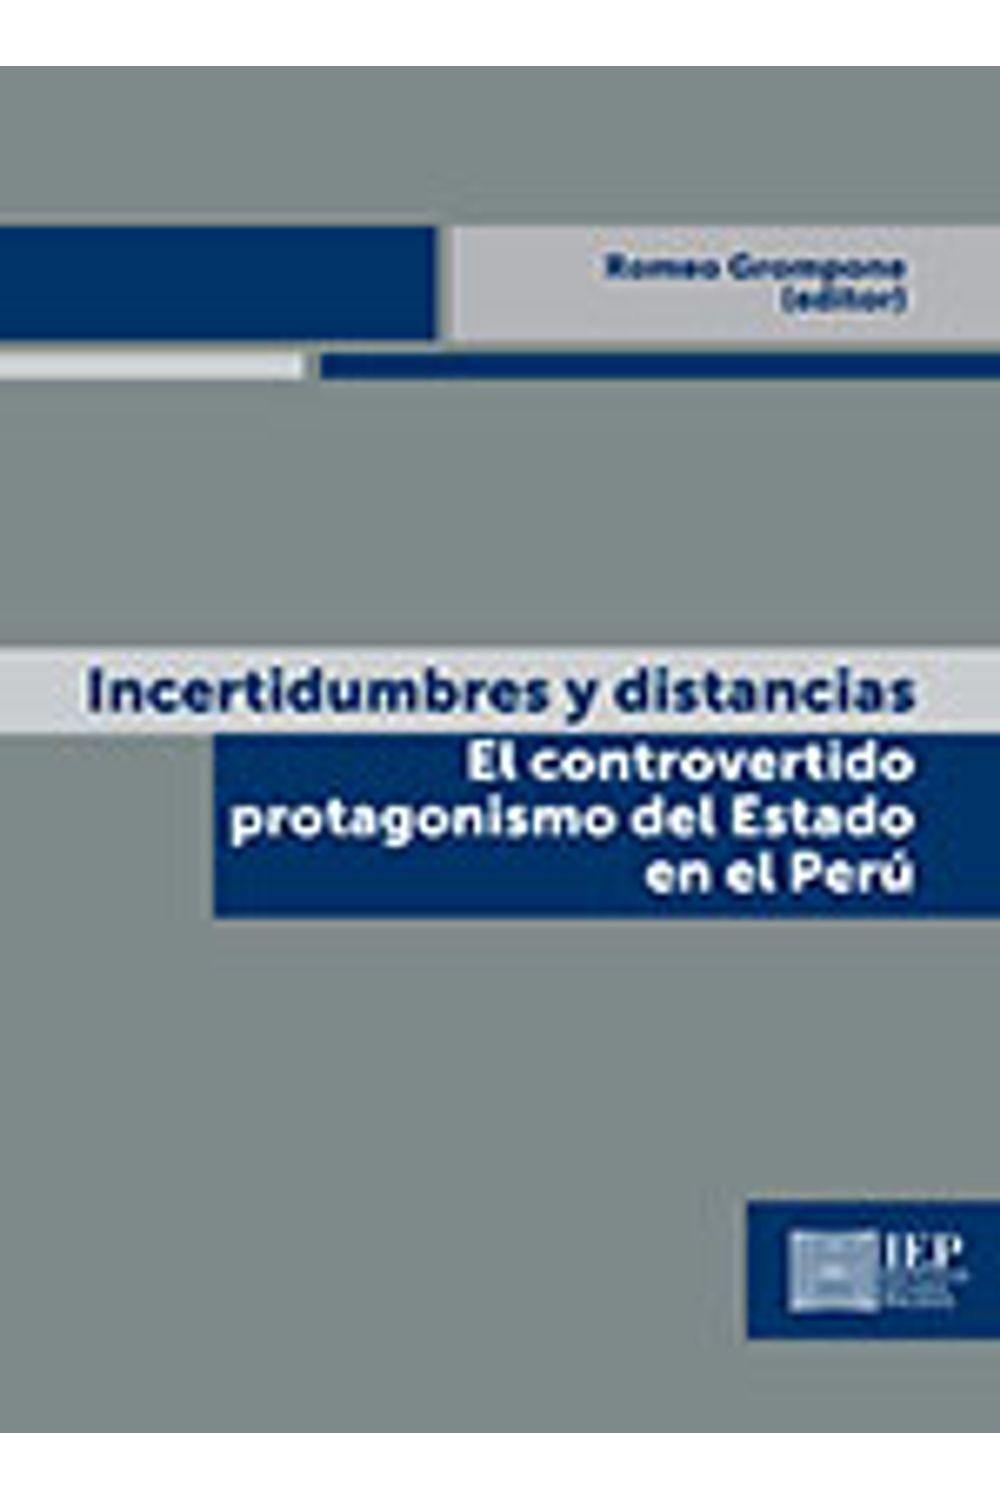 bm-incertidumbres-y-distancias-el-controvertido-protagonismo-del-estado-en-el-peru-instituto-de-estudios-peruanos-iep-9789972515798